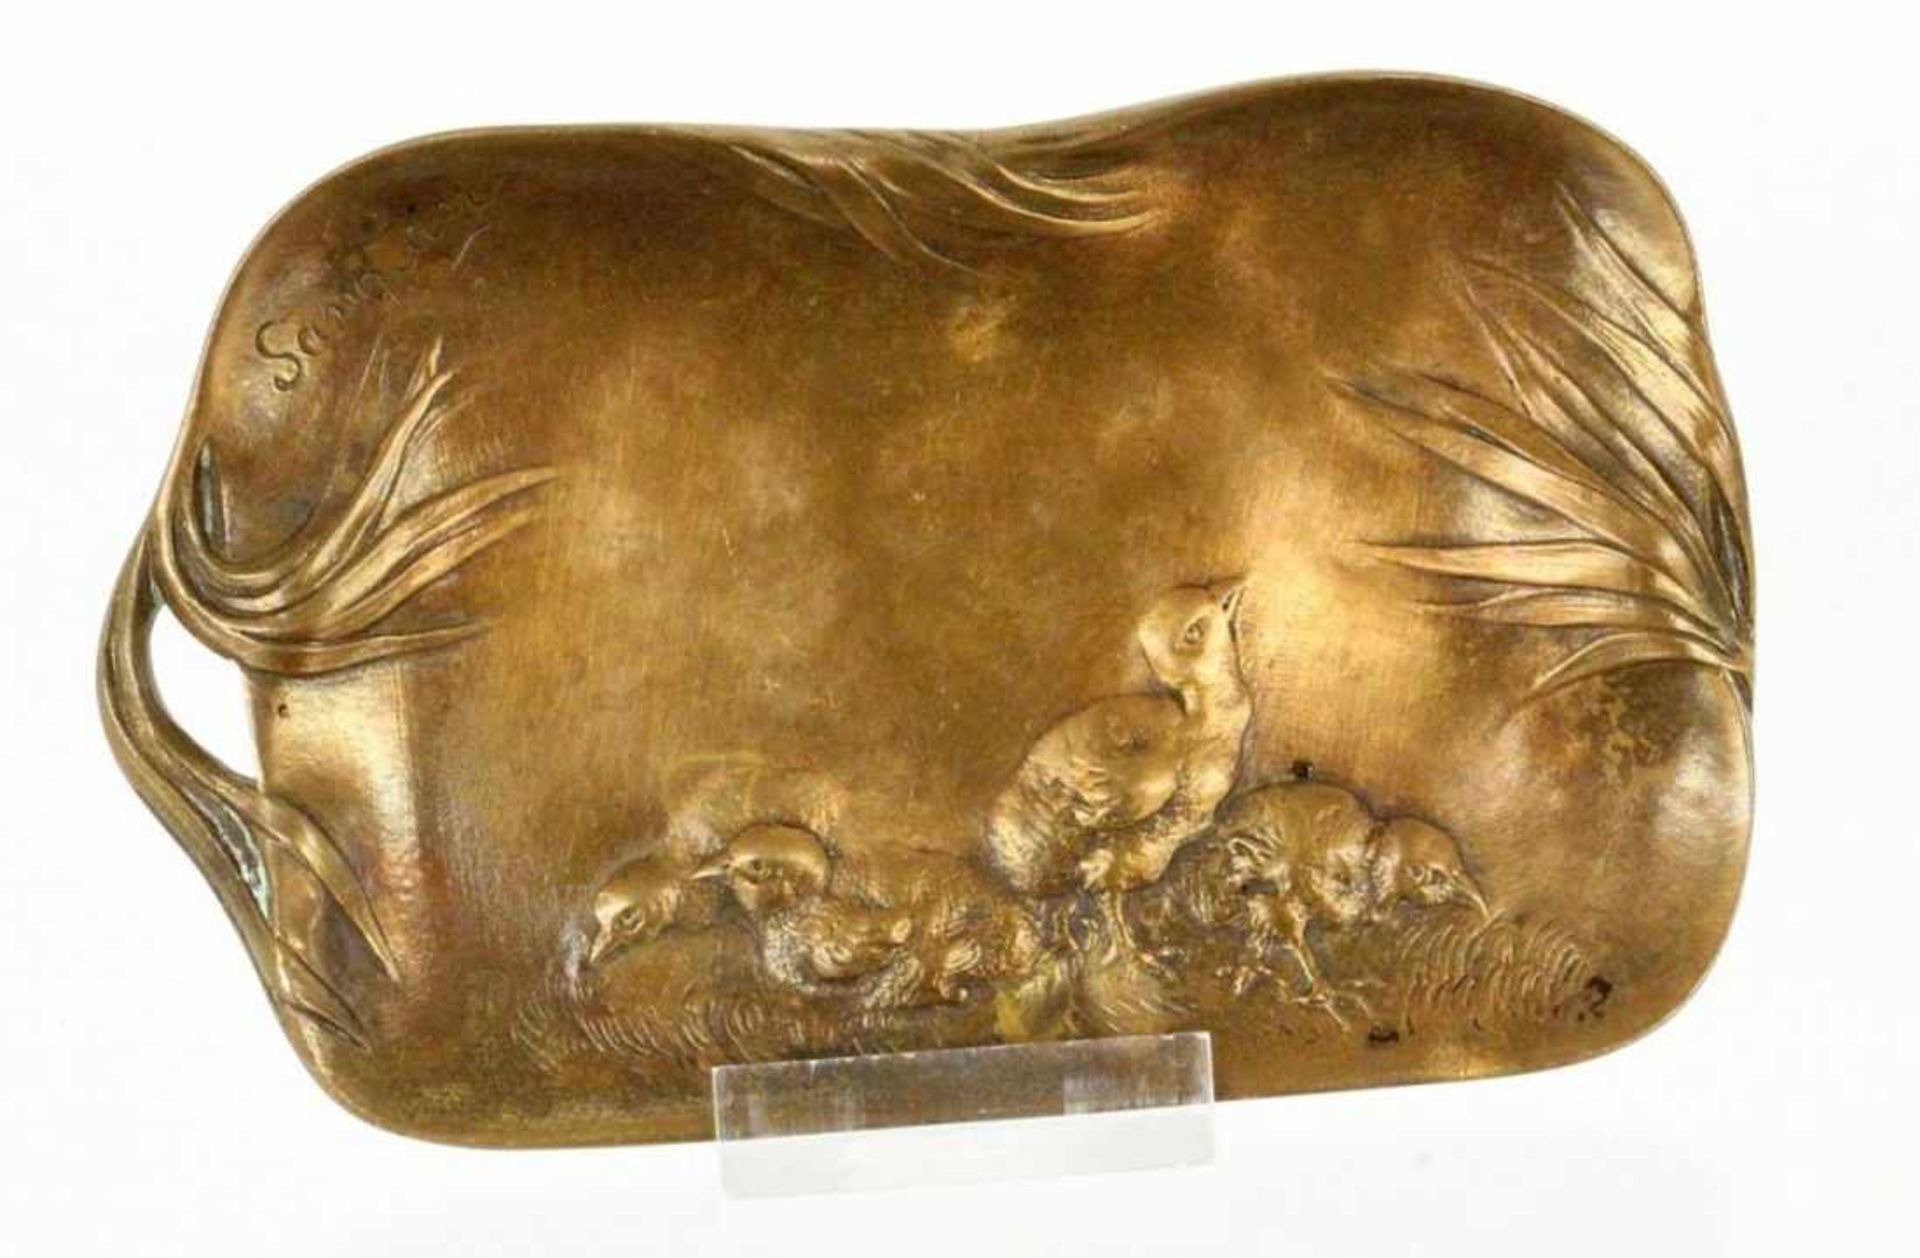 ERNEST SANGLANFrankreich um 1900 Bronzeschale mit Kücken im Relief. Signiert. 8x13,5cmERNEST SANGLAN